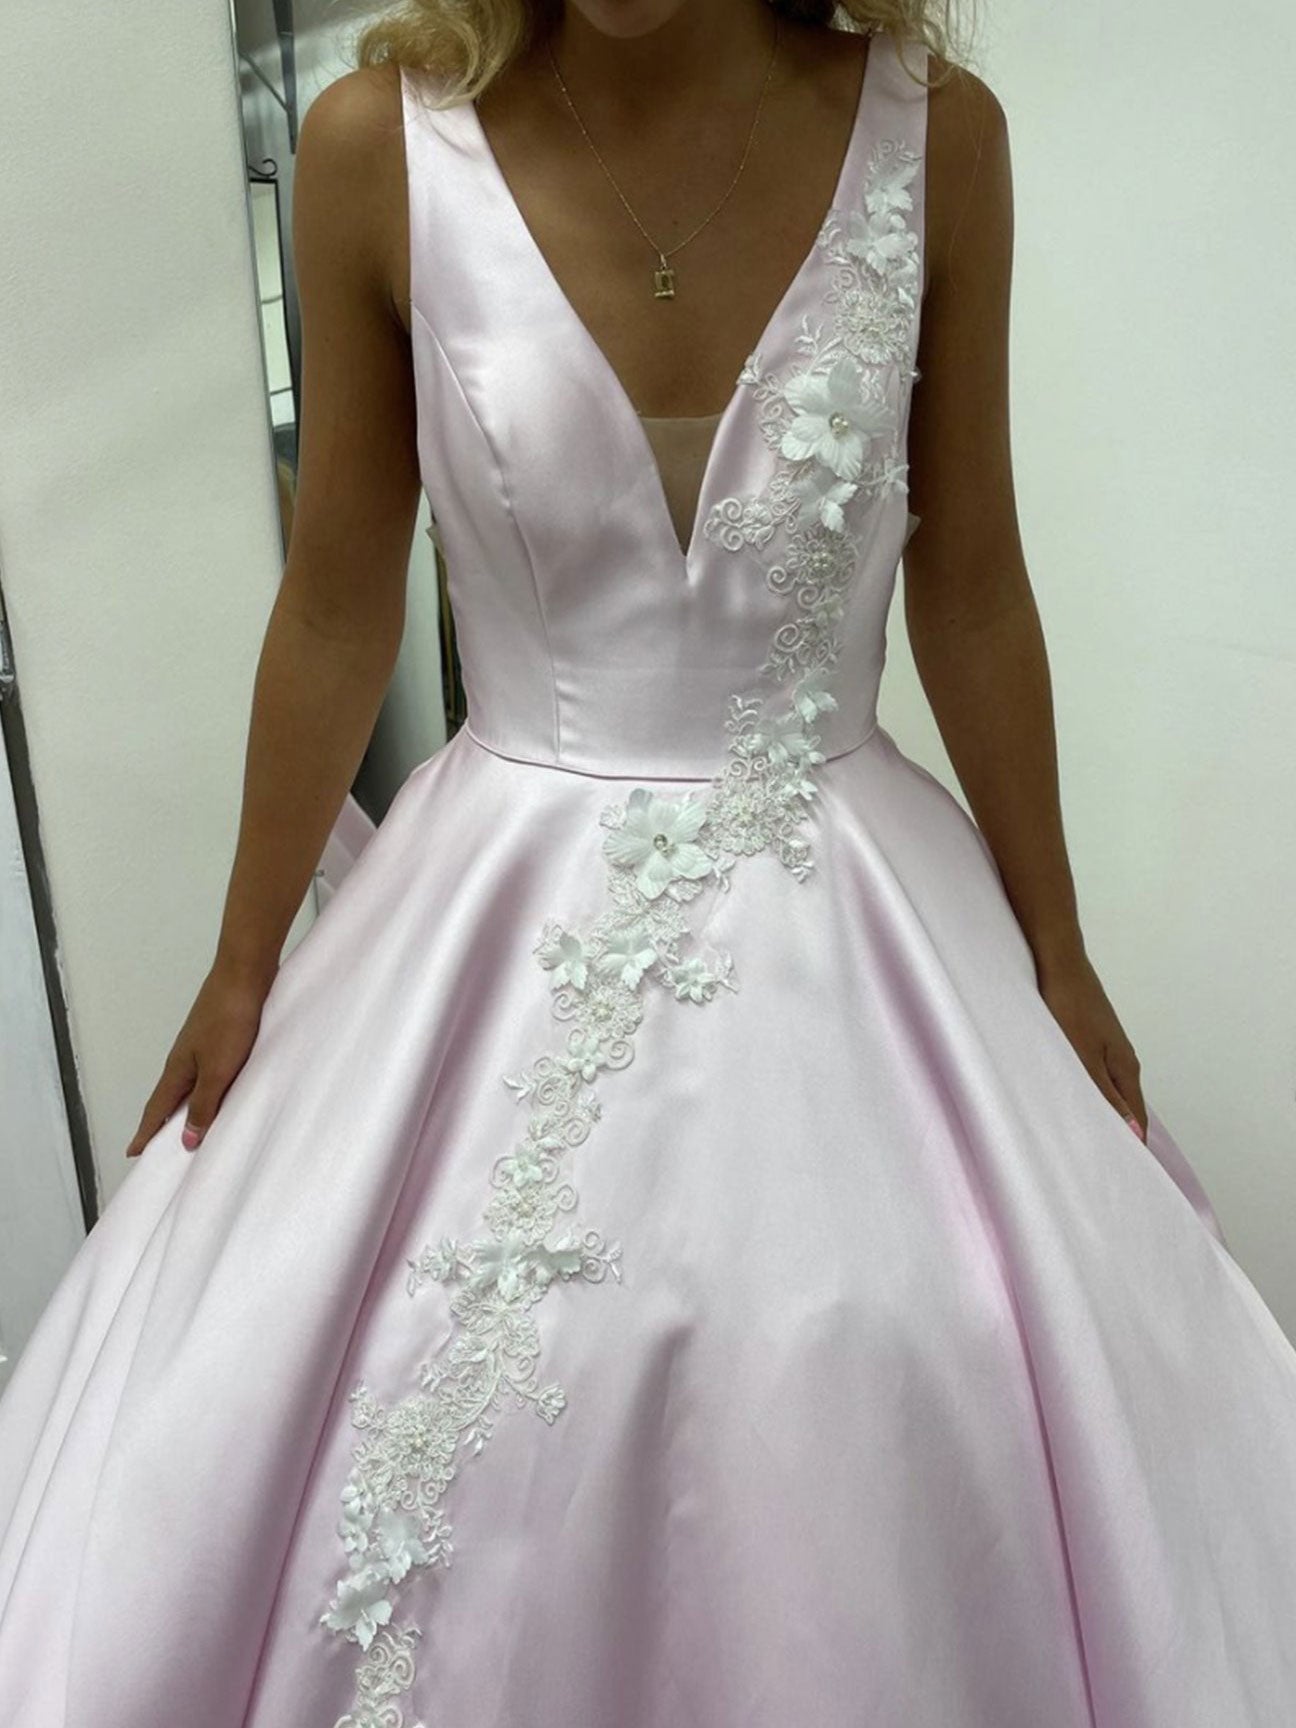 Pink v neck satin lace long prom dress, pink lace evening dress